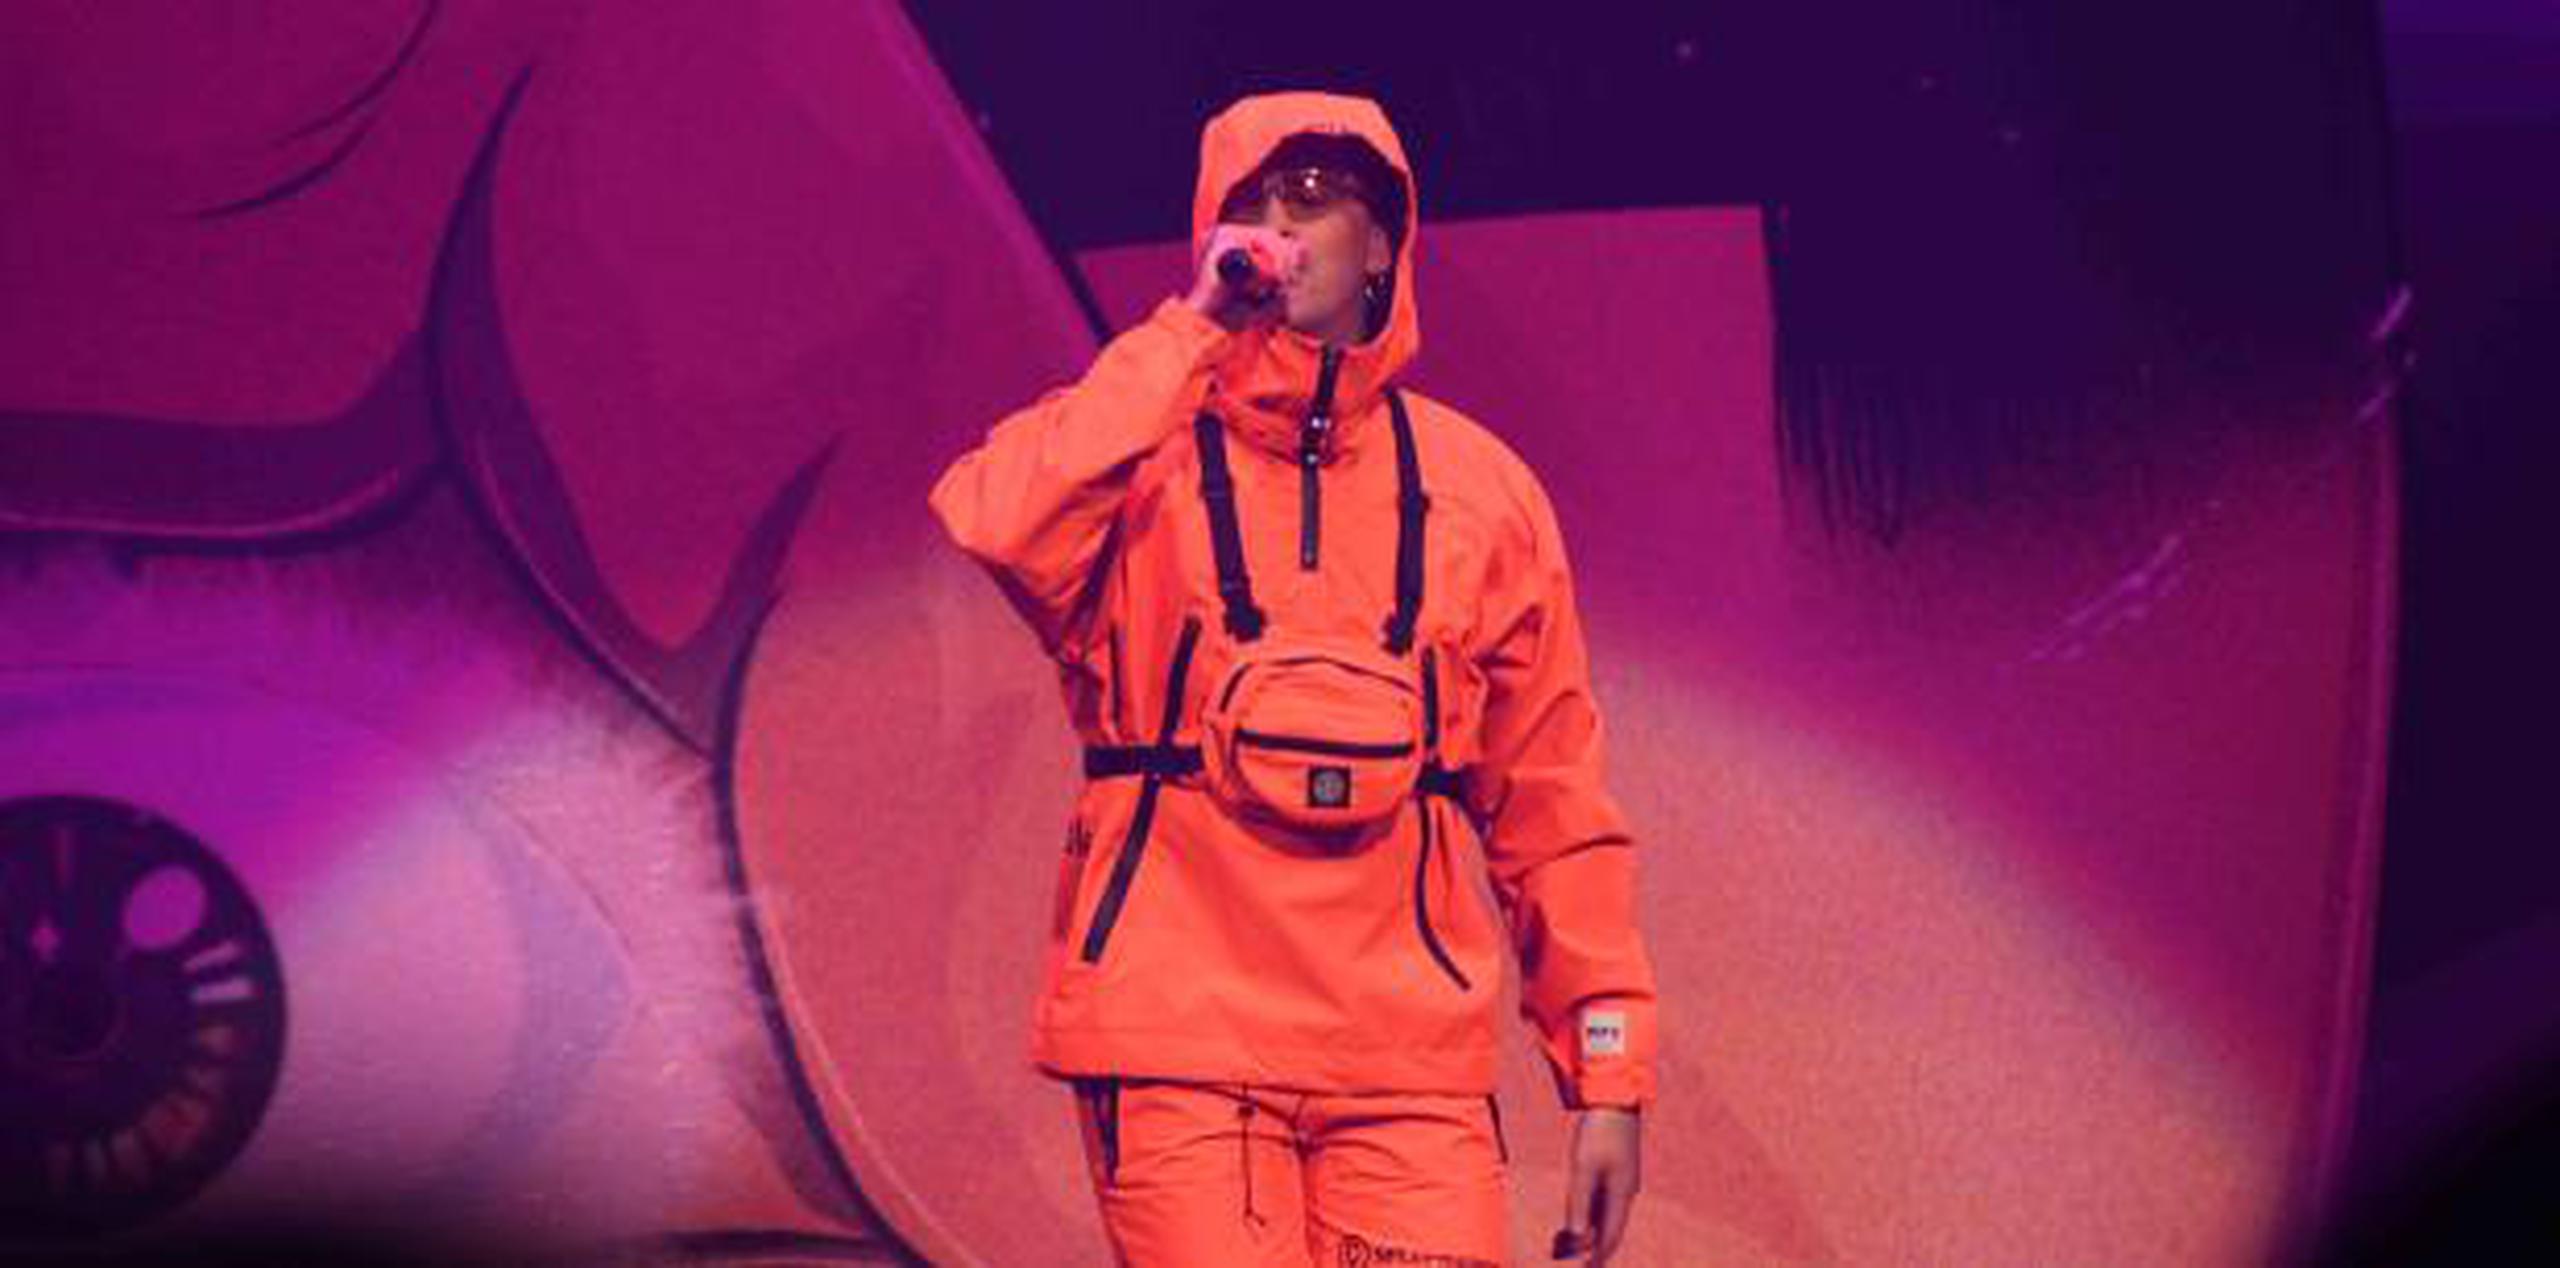 El cierre estuvo a cargo del artista Bad Bunny, quien vistió un llamativo conjunto de color naranja compuesto por un abrigo y un pantalón corto. También lució colgada a su pecho una cartera del mismo color. (Suministrada)